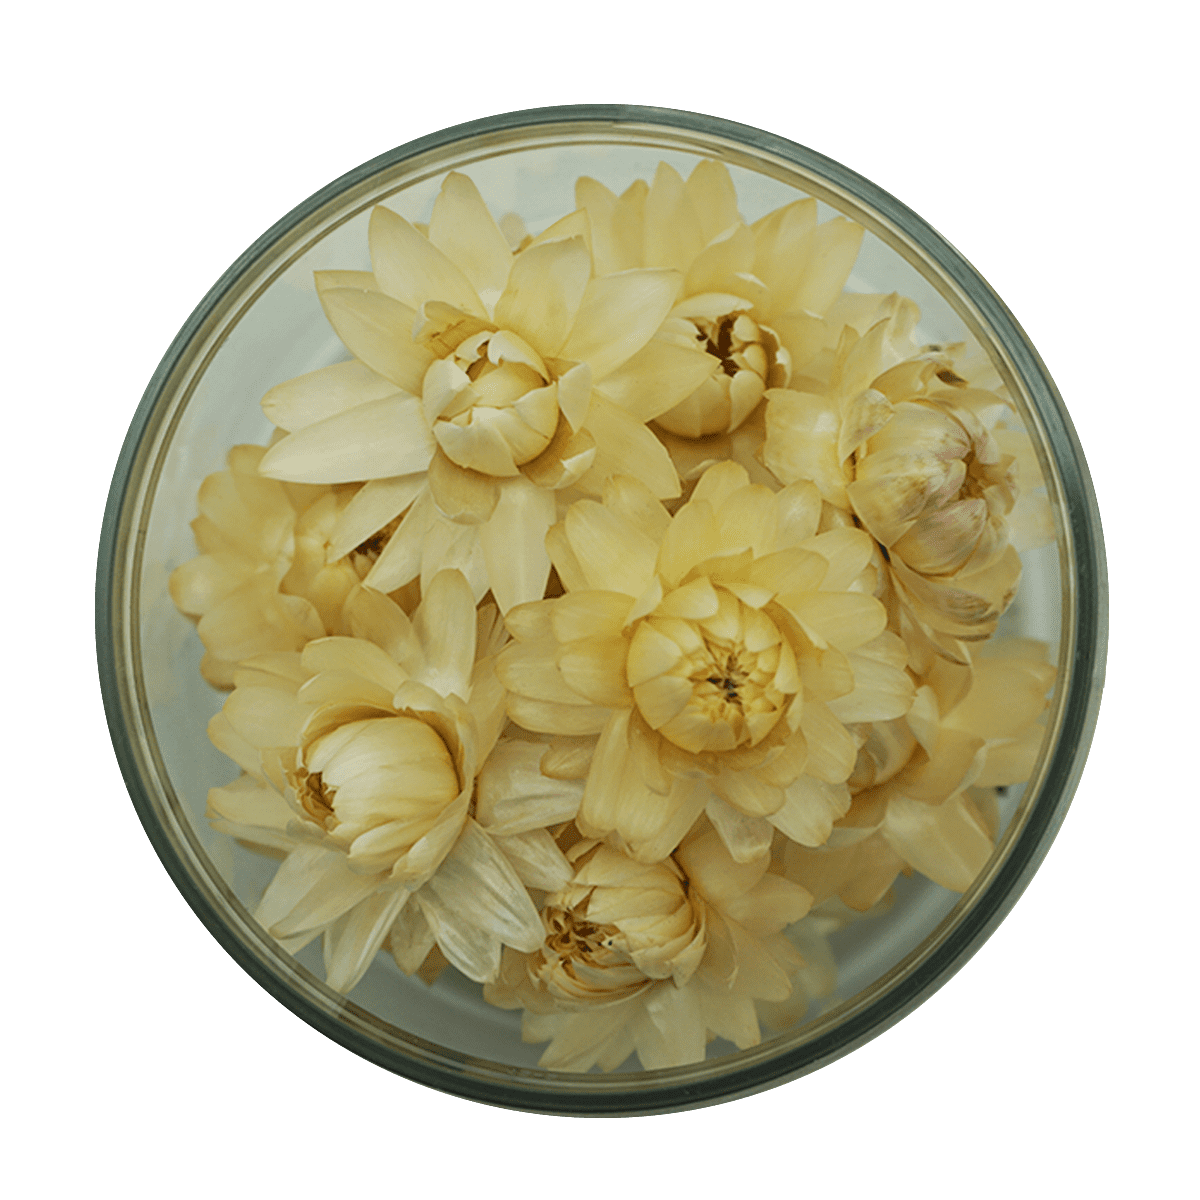 Weiße Strohblumen sind ein zeitloses Symbol der Reinheit und Eleganz. Unsere weißen Strohblumen verleihen deinen Arrangements eine klassische Schönheit und eine Atmosphäre von Raffinesse. Diese Blumen sind perfekt für Hochzeiten, Jubiläen und besondere Anlässe, da sie Unschuld und Reinheit symbolisieren. Unsere handverlesenen weißen Strohblumen sind von höchster Qualität und werden schonend getrocknet, um ihre natürliche Schönheit und ihren Glanz zu bewahren